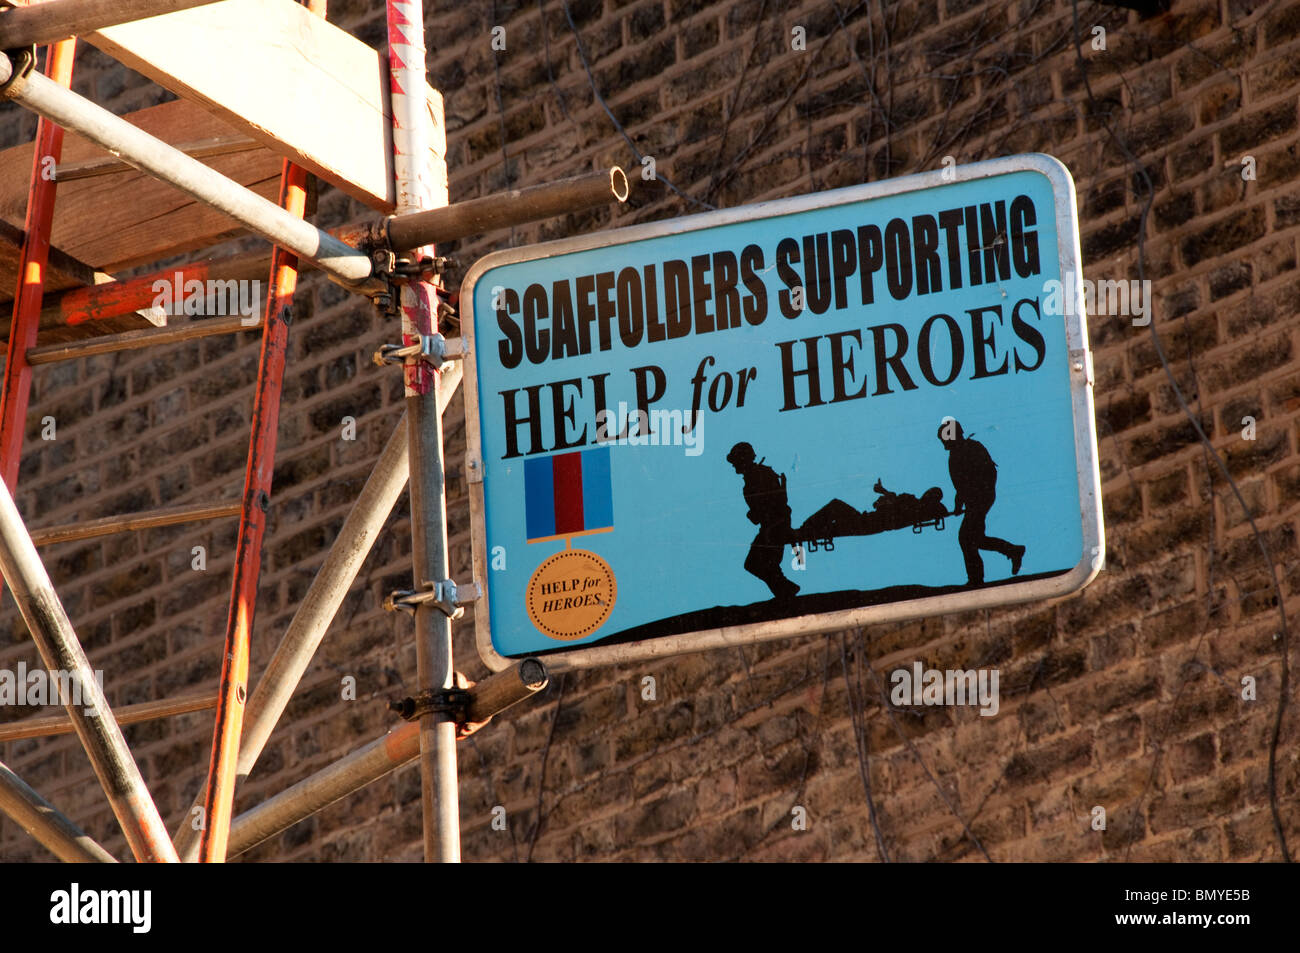 Scaffolders Guida di supporto per gli eroi segno su un edificio sito nella parte sud di Londra Foto Stock